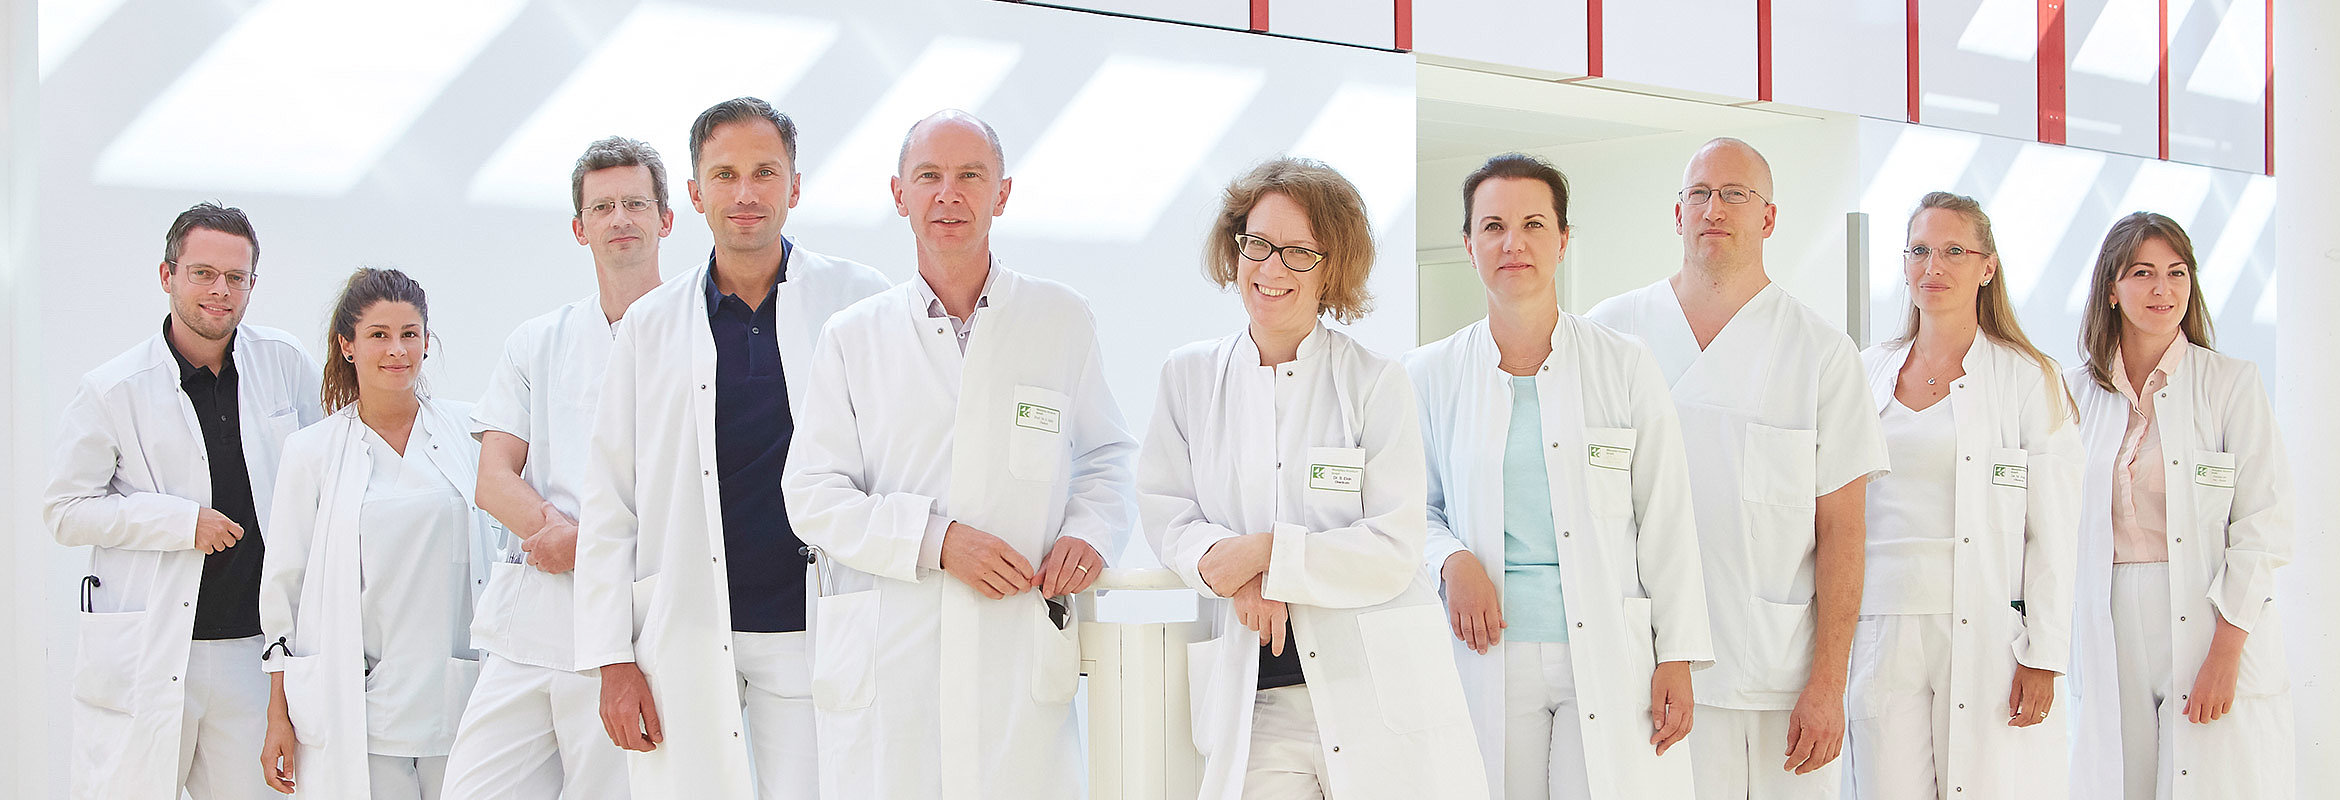 Prof. Dr. med. Gerhard Held, Chefarzt der Klinik für Innere Medizin 1 in Kaiserslautern, und sein Team